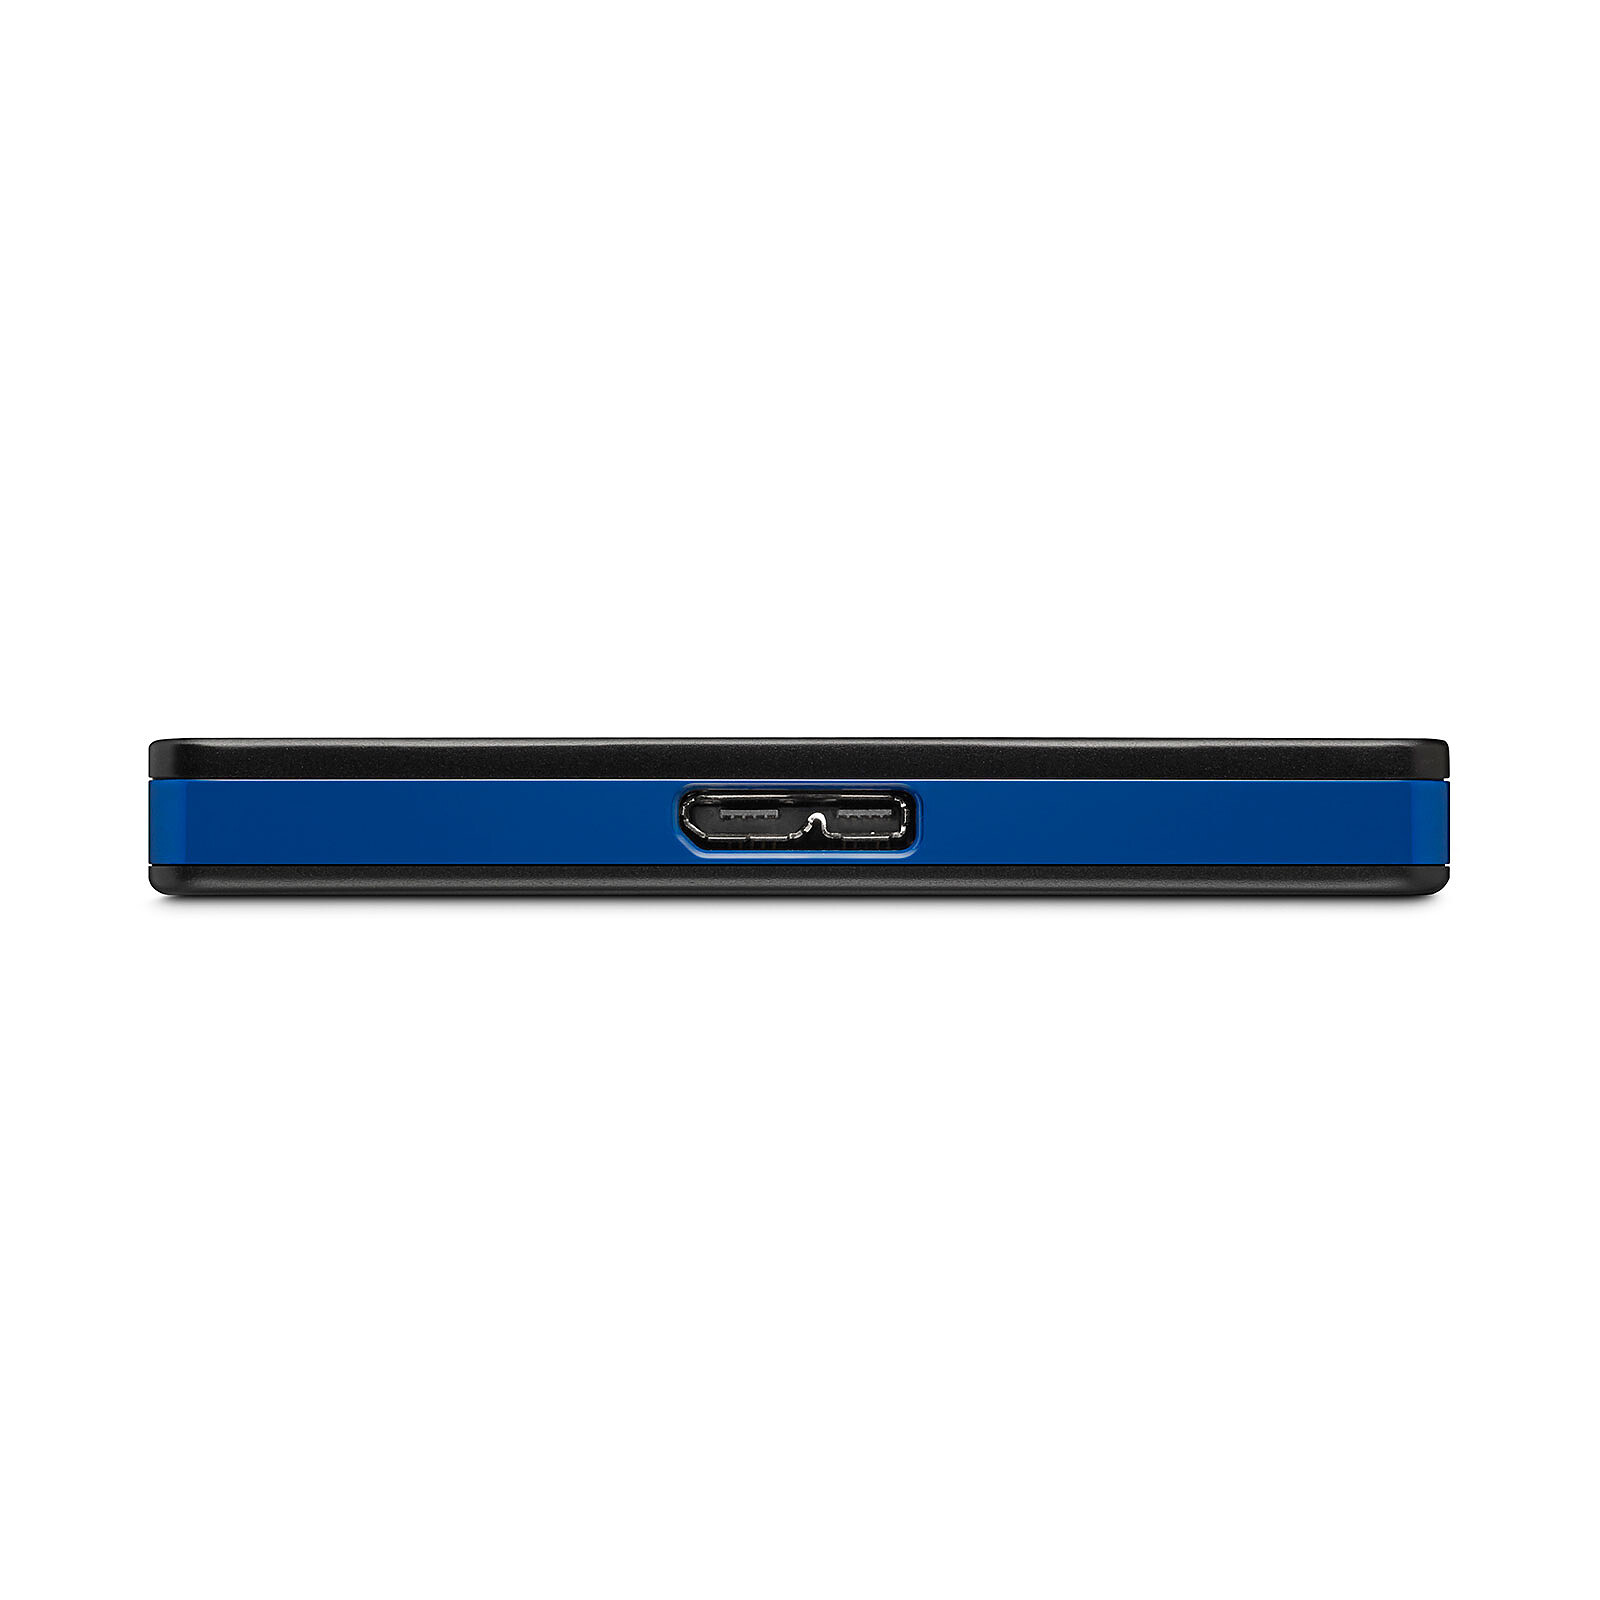 Seagate Game Drive 4 To Noir et bleu - Accessoires PS4 - Garantie 3 ans  LDLC